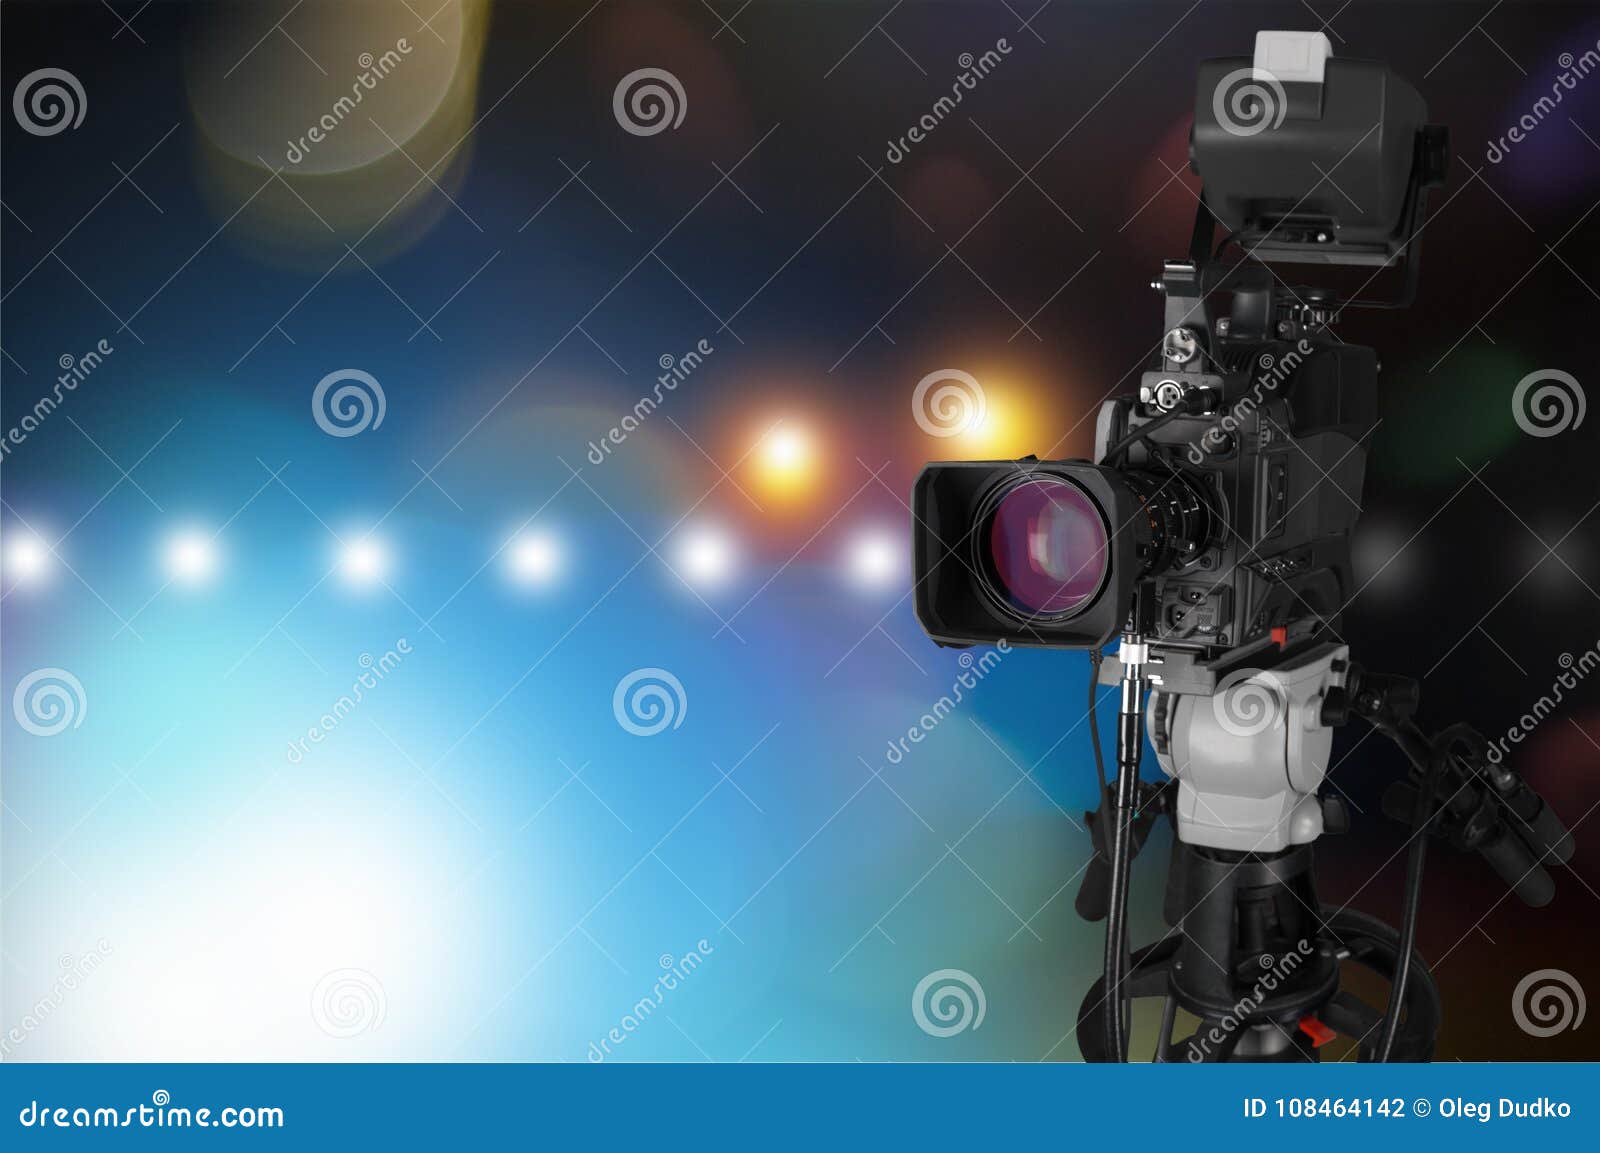 Bạn đang tìm kiếm sự chuyên nghiệp trong quá trình quay phim của mình? Máy quay phim chuyên nghiệp trên nền của chúng tôi sẽ cho phép bạn tạo ra những bức ảnh vượt trội với chất lượng hình ảnh đỉnh cao. Hãy click để thưởng thức trọn vẹn khả năng của máy quay chuyên nghiệp.